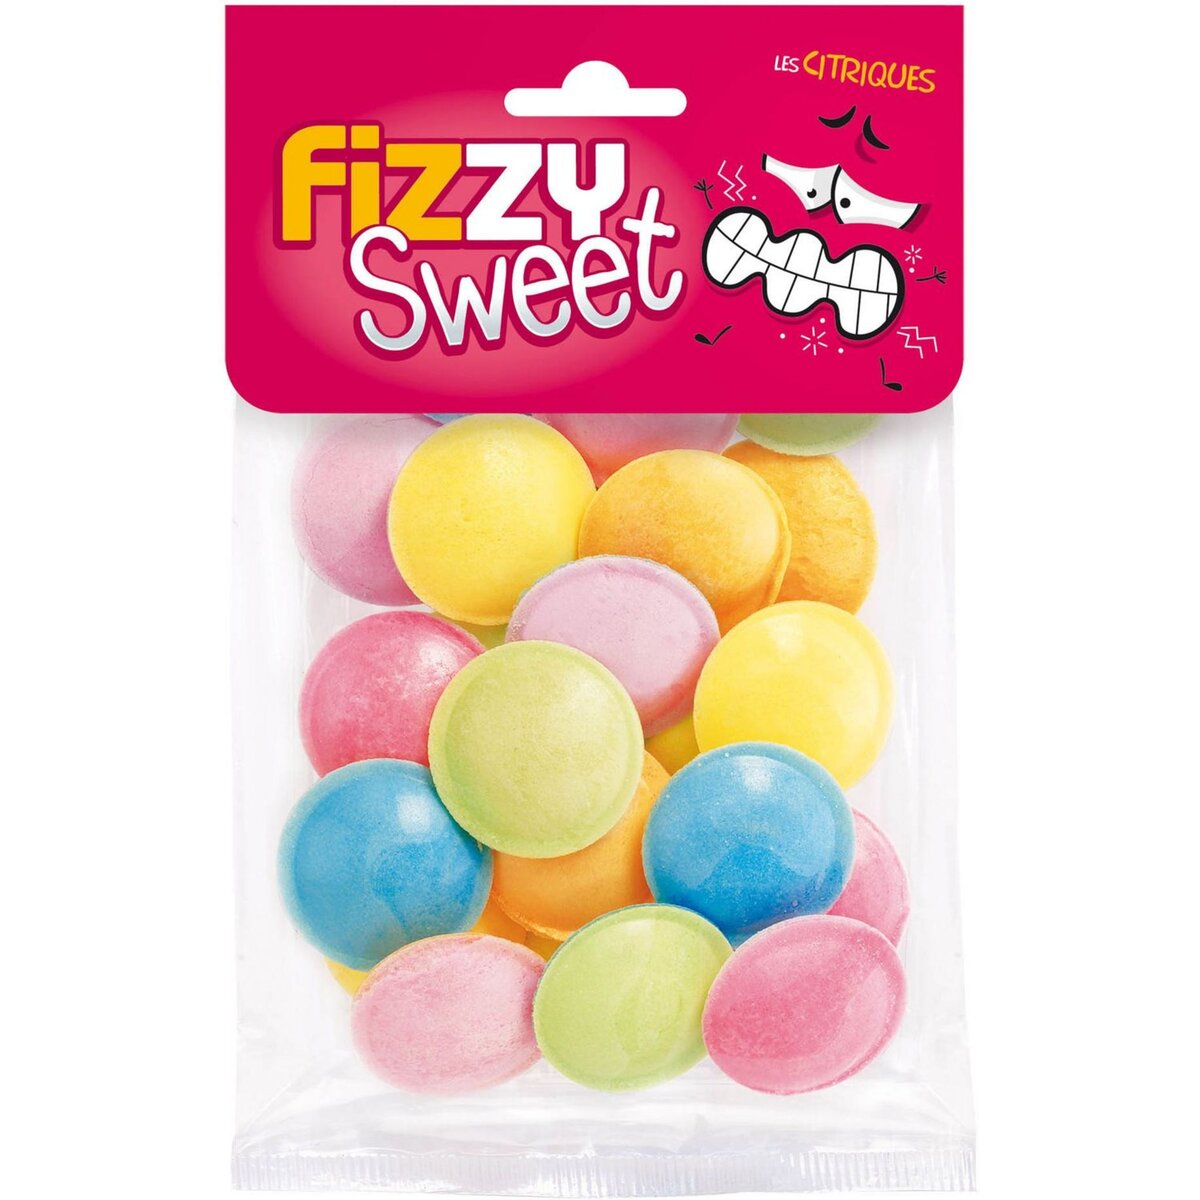 FIZZY Fizzy Sweet scoopy sachet 40g